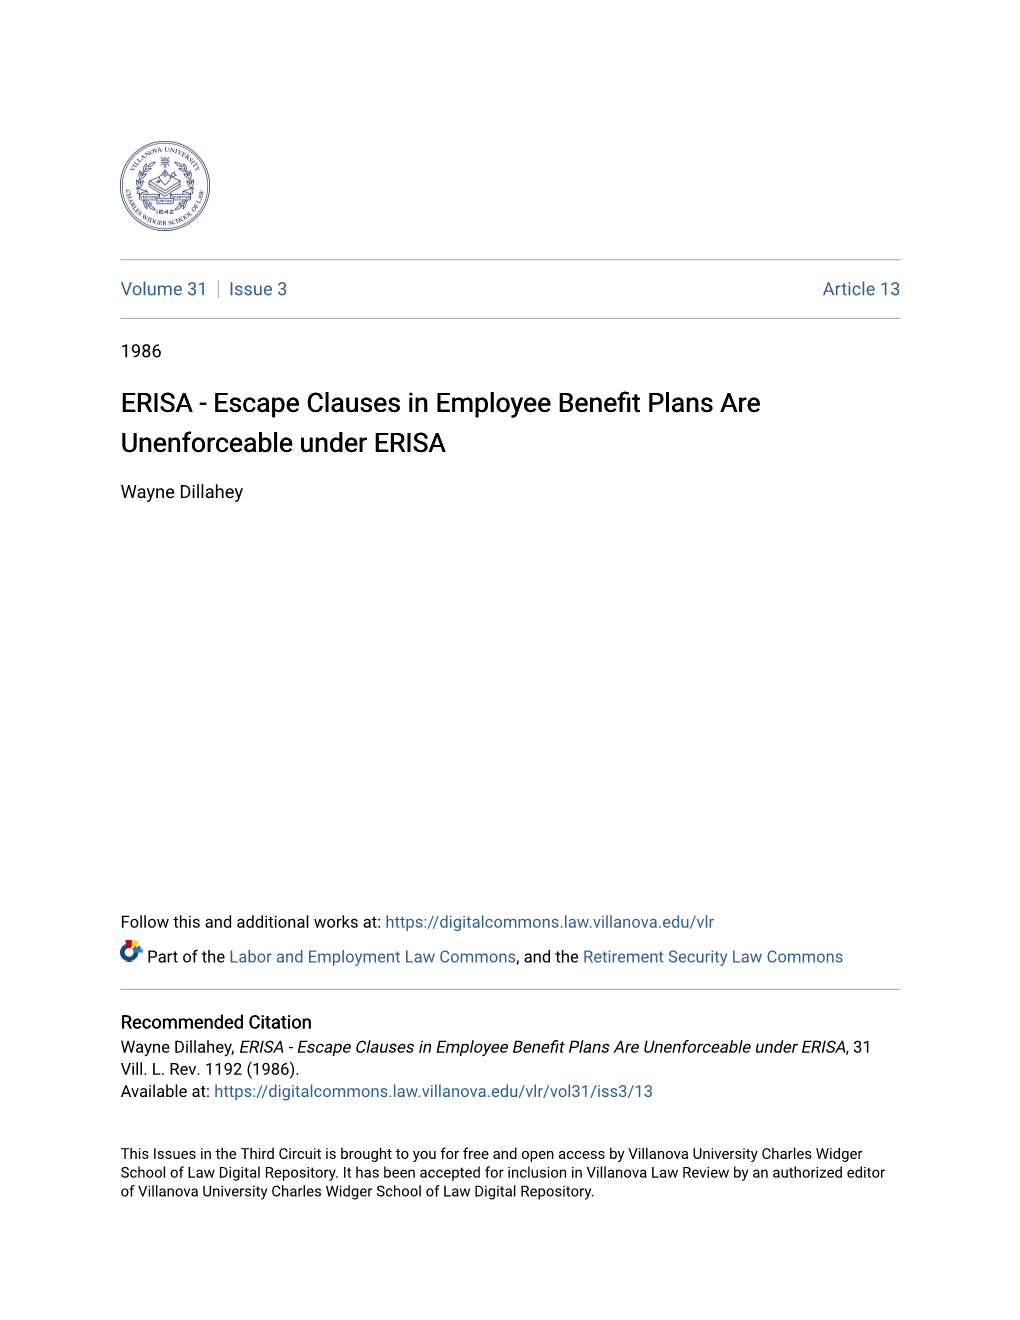 ERISA - Escape Clauses in Employee Benefit Plans Are Unenforceable Under ERISA